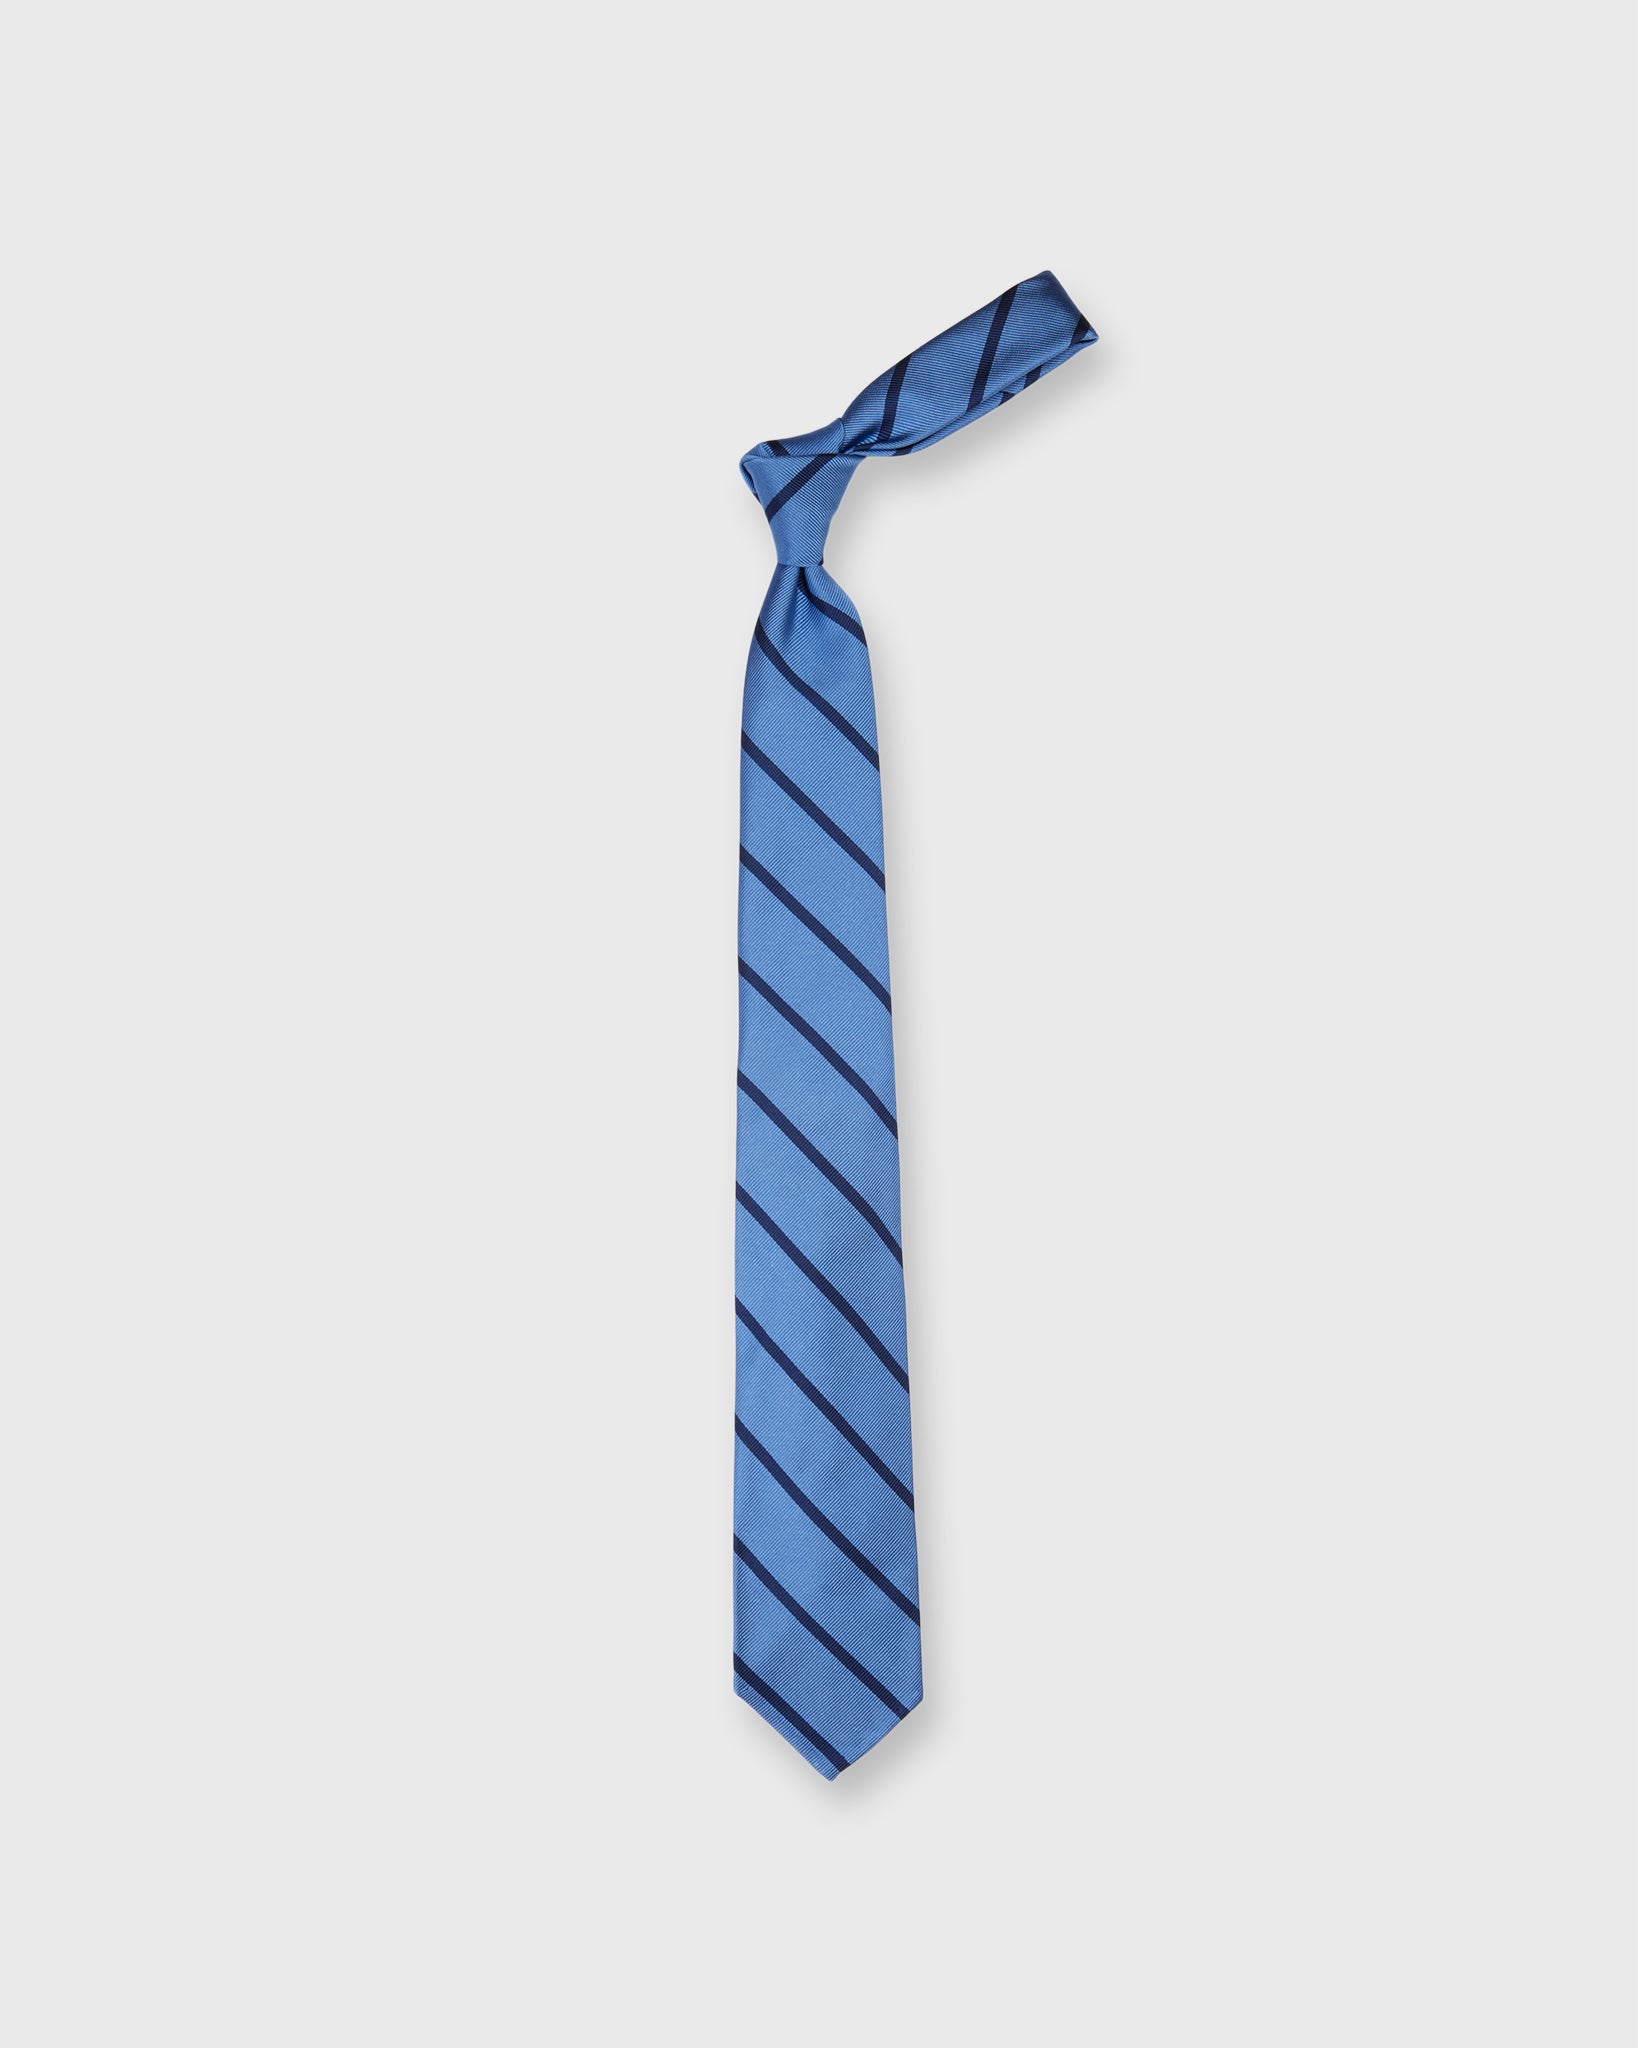 Silk Woven Tie in Dusty Blue/Navy Stripe